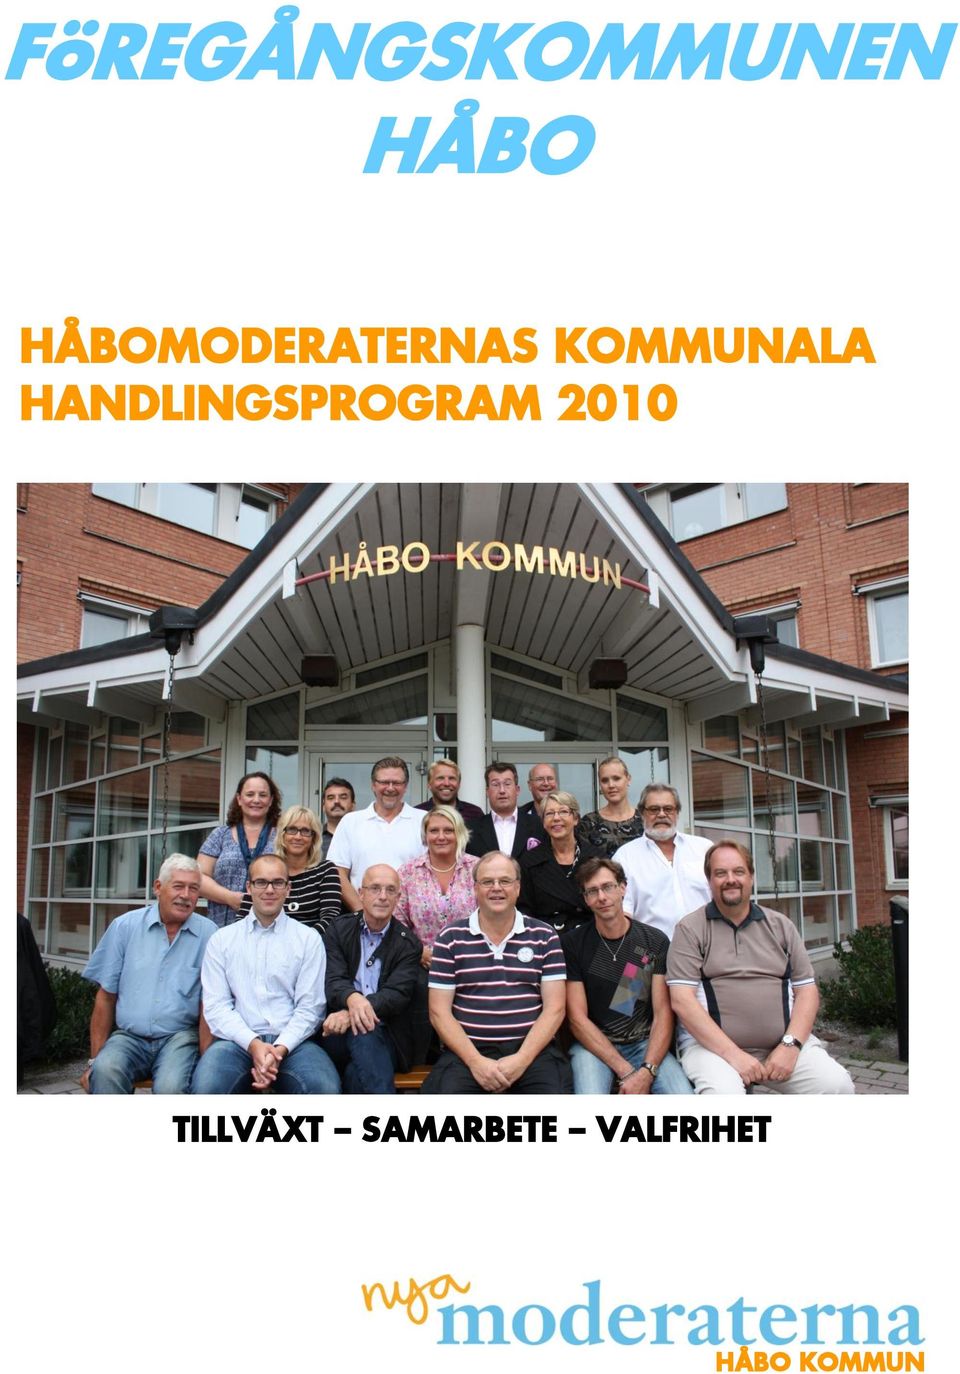 HANDLINGSPROGRAM 2010